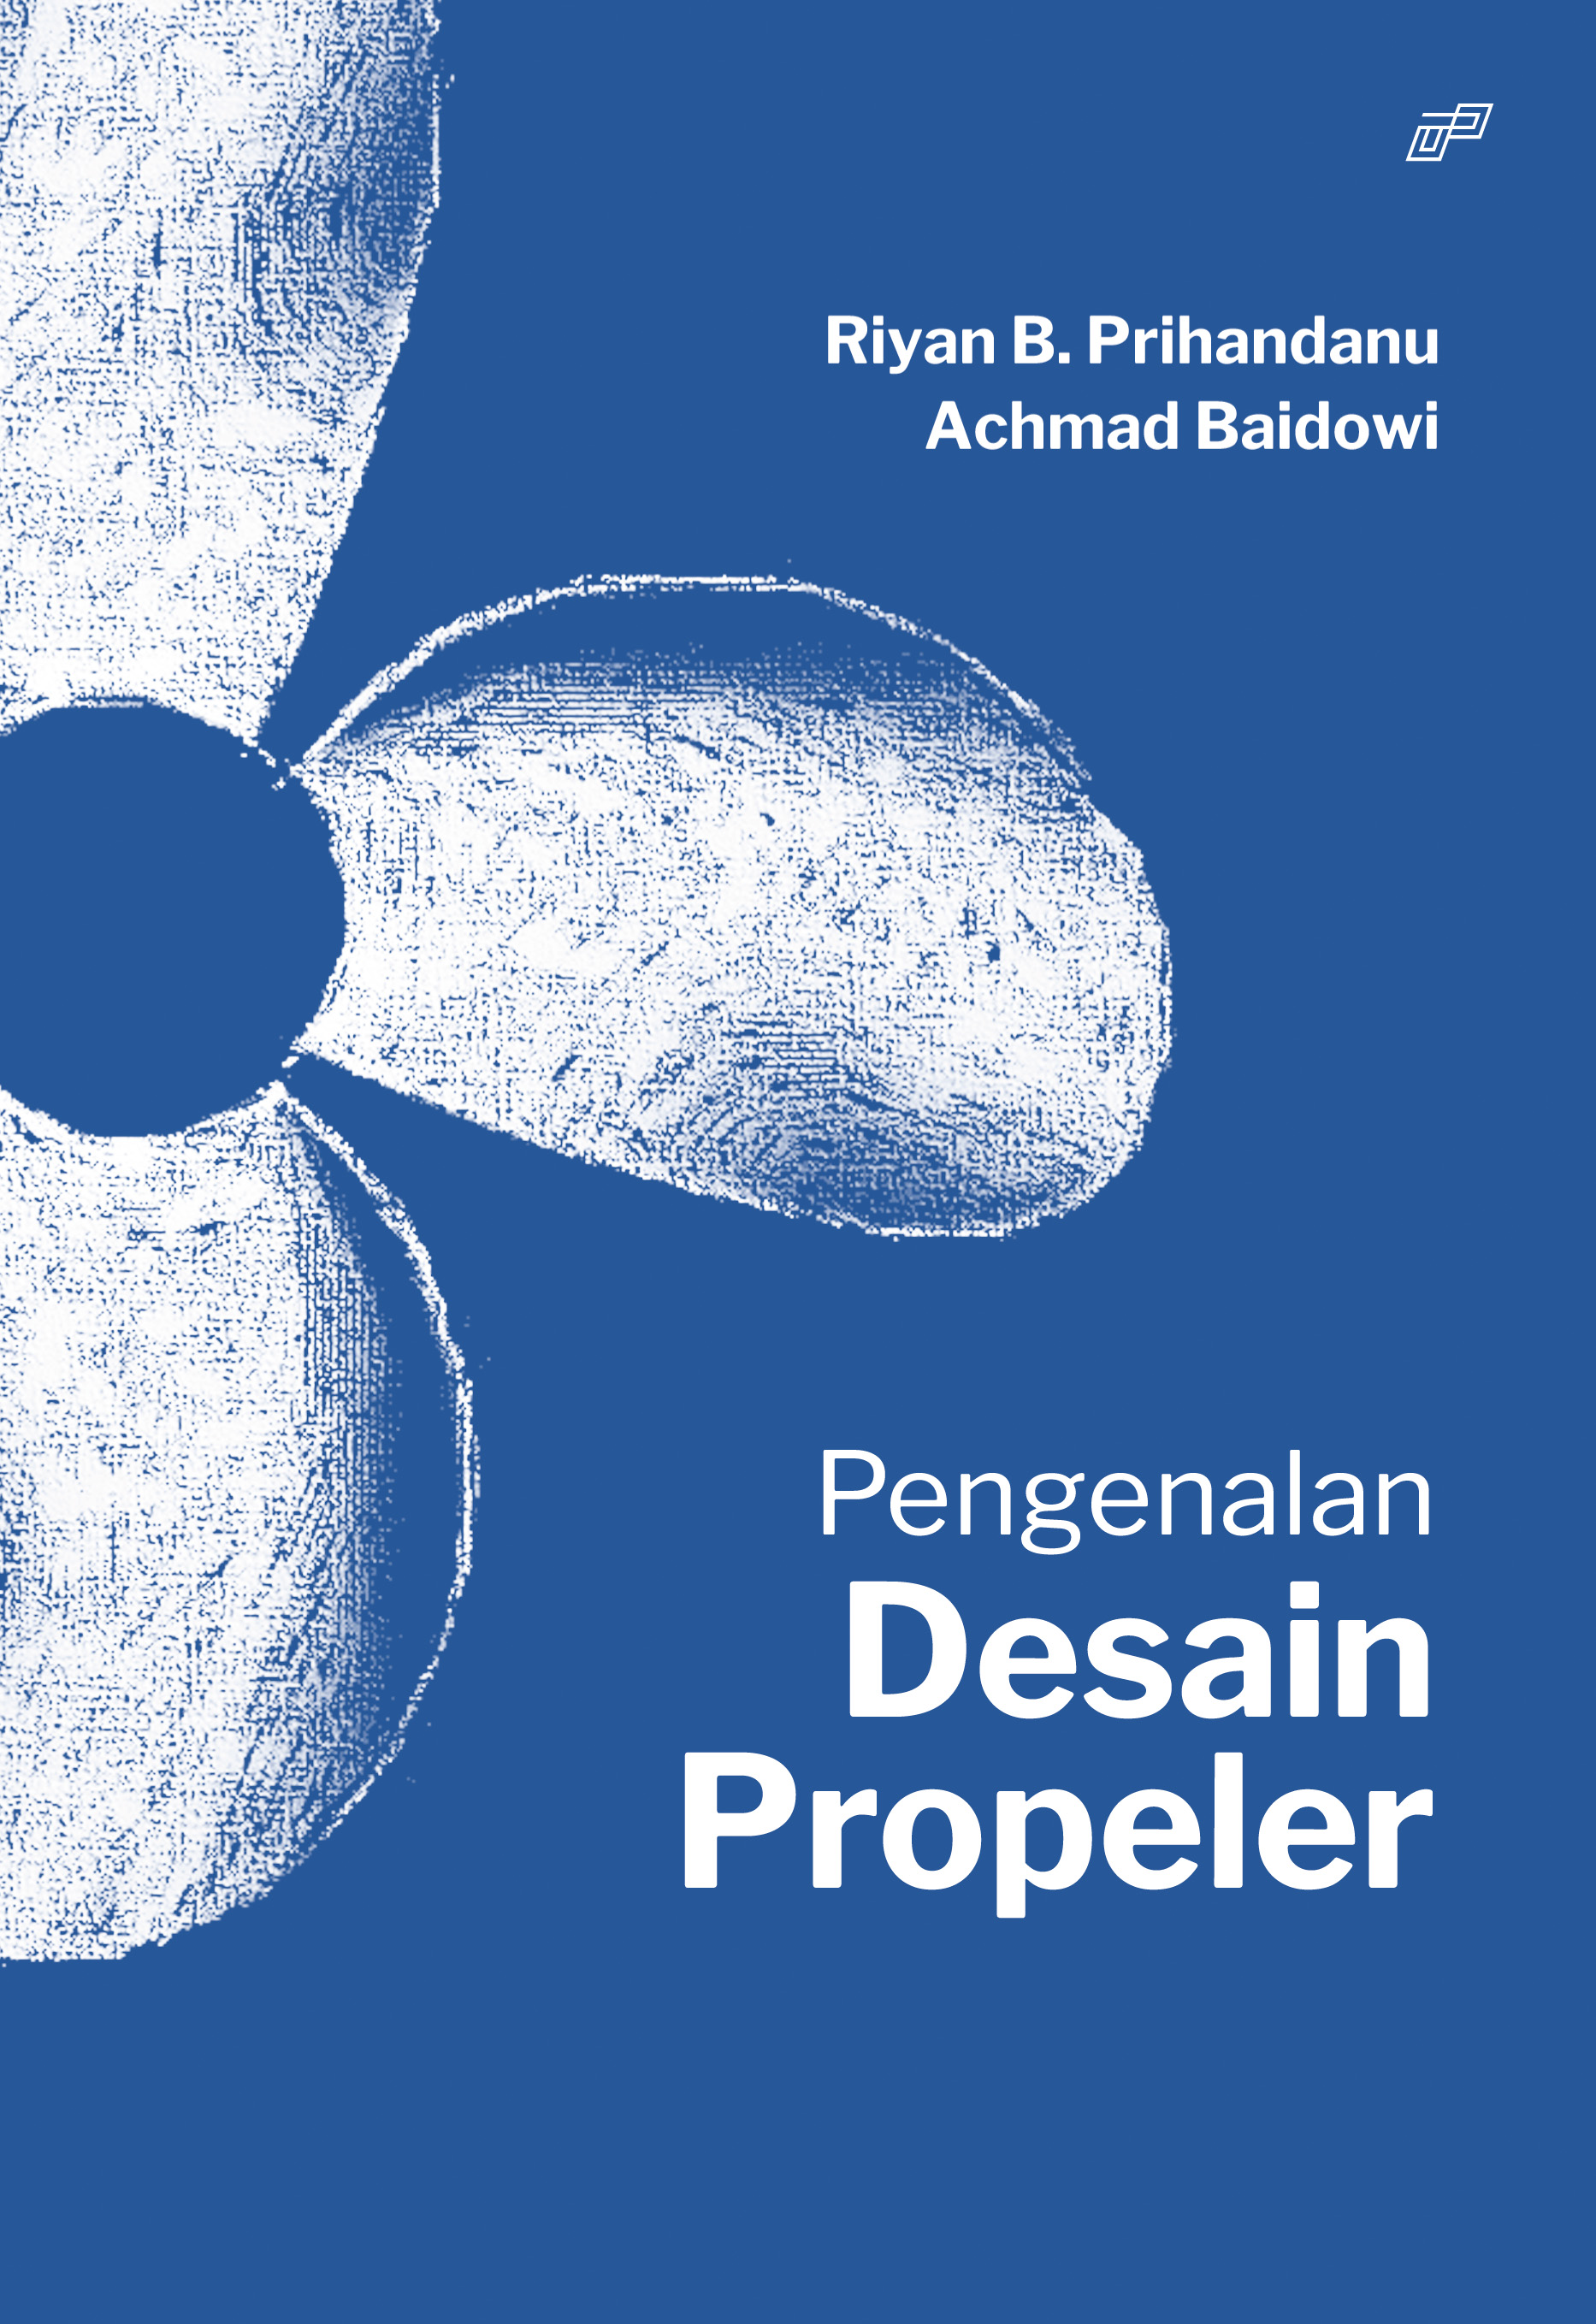 Pengenalan desain propeller [sumber elektronis]